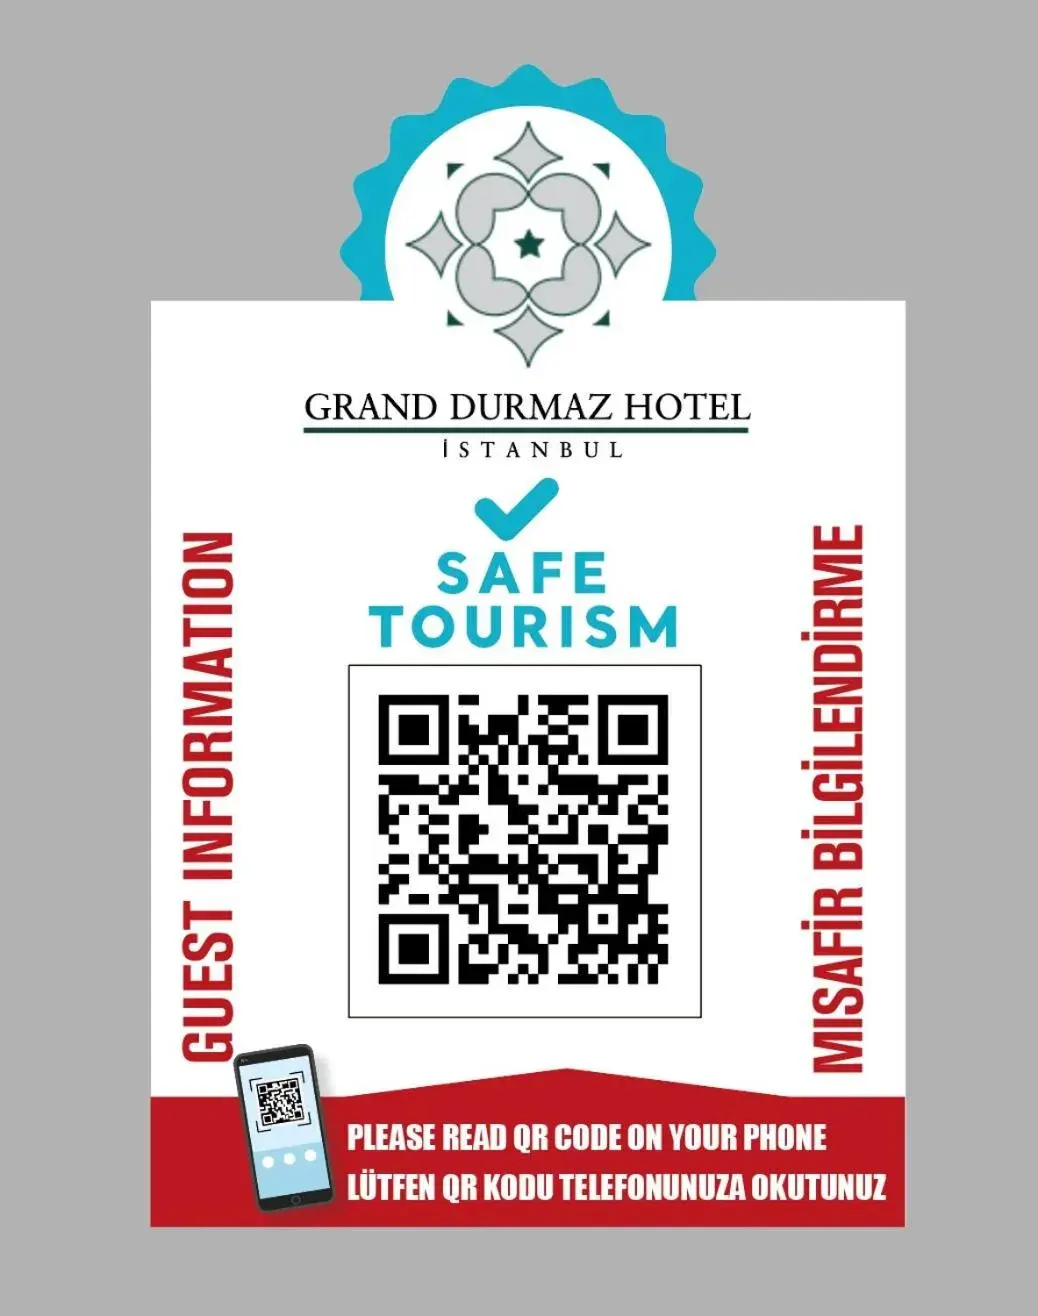 Certificate/Award in Grand Durmaz Hotel